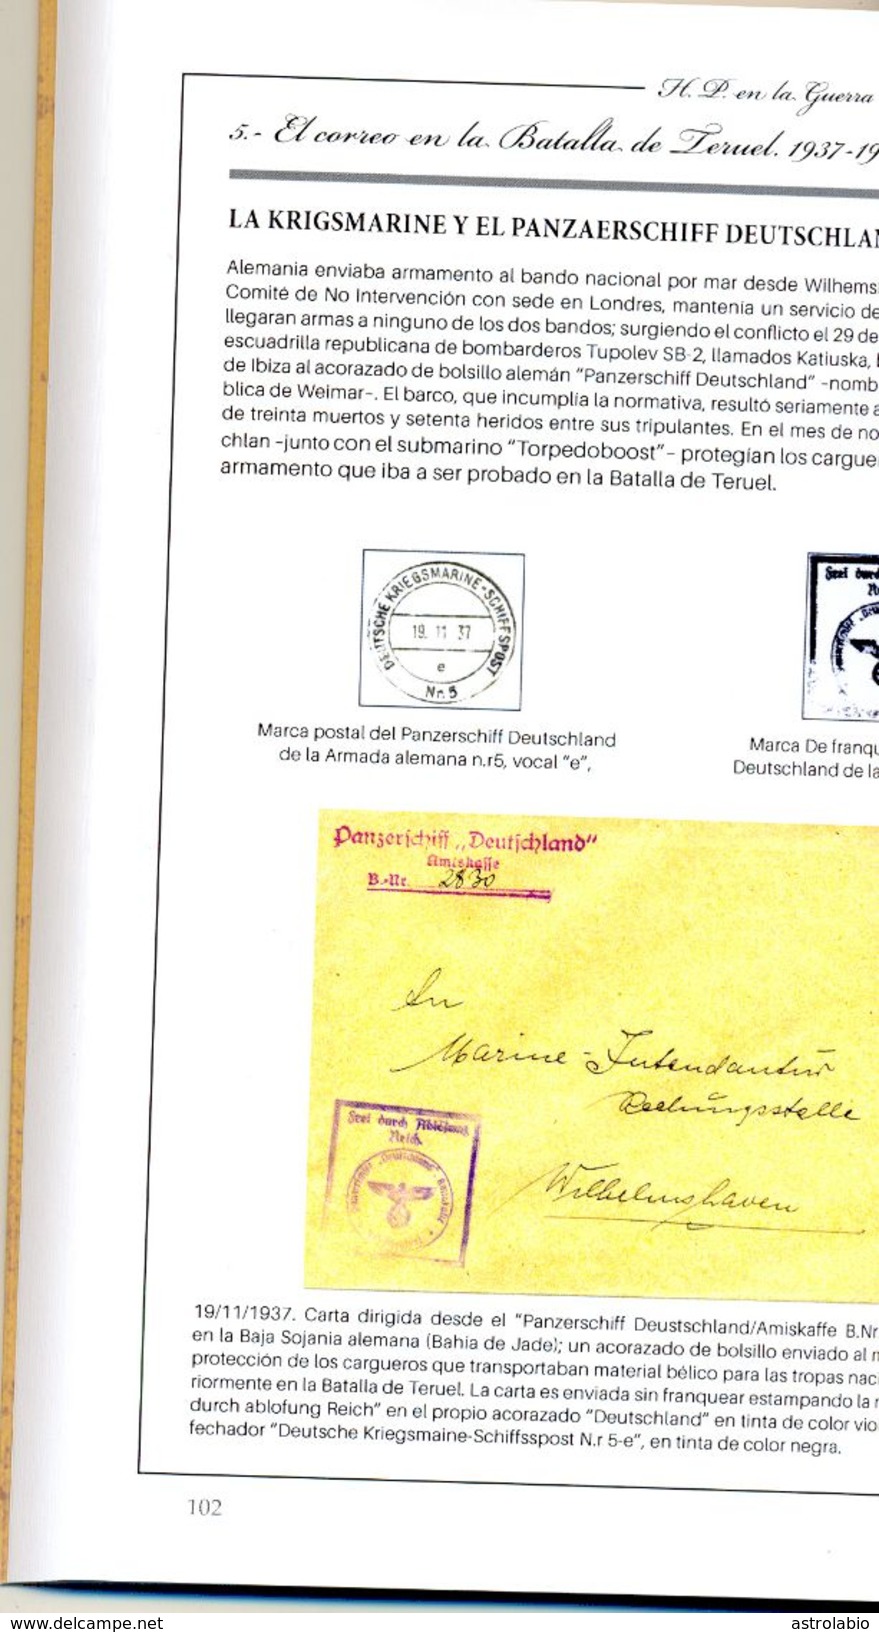 Historia Postal En La Guerra Civil Española Vol II - Teruel 1936-39  Ver 7 Scan - Military Mail And Military History